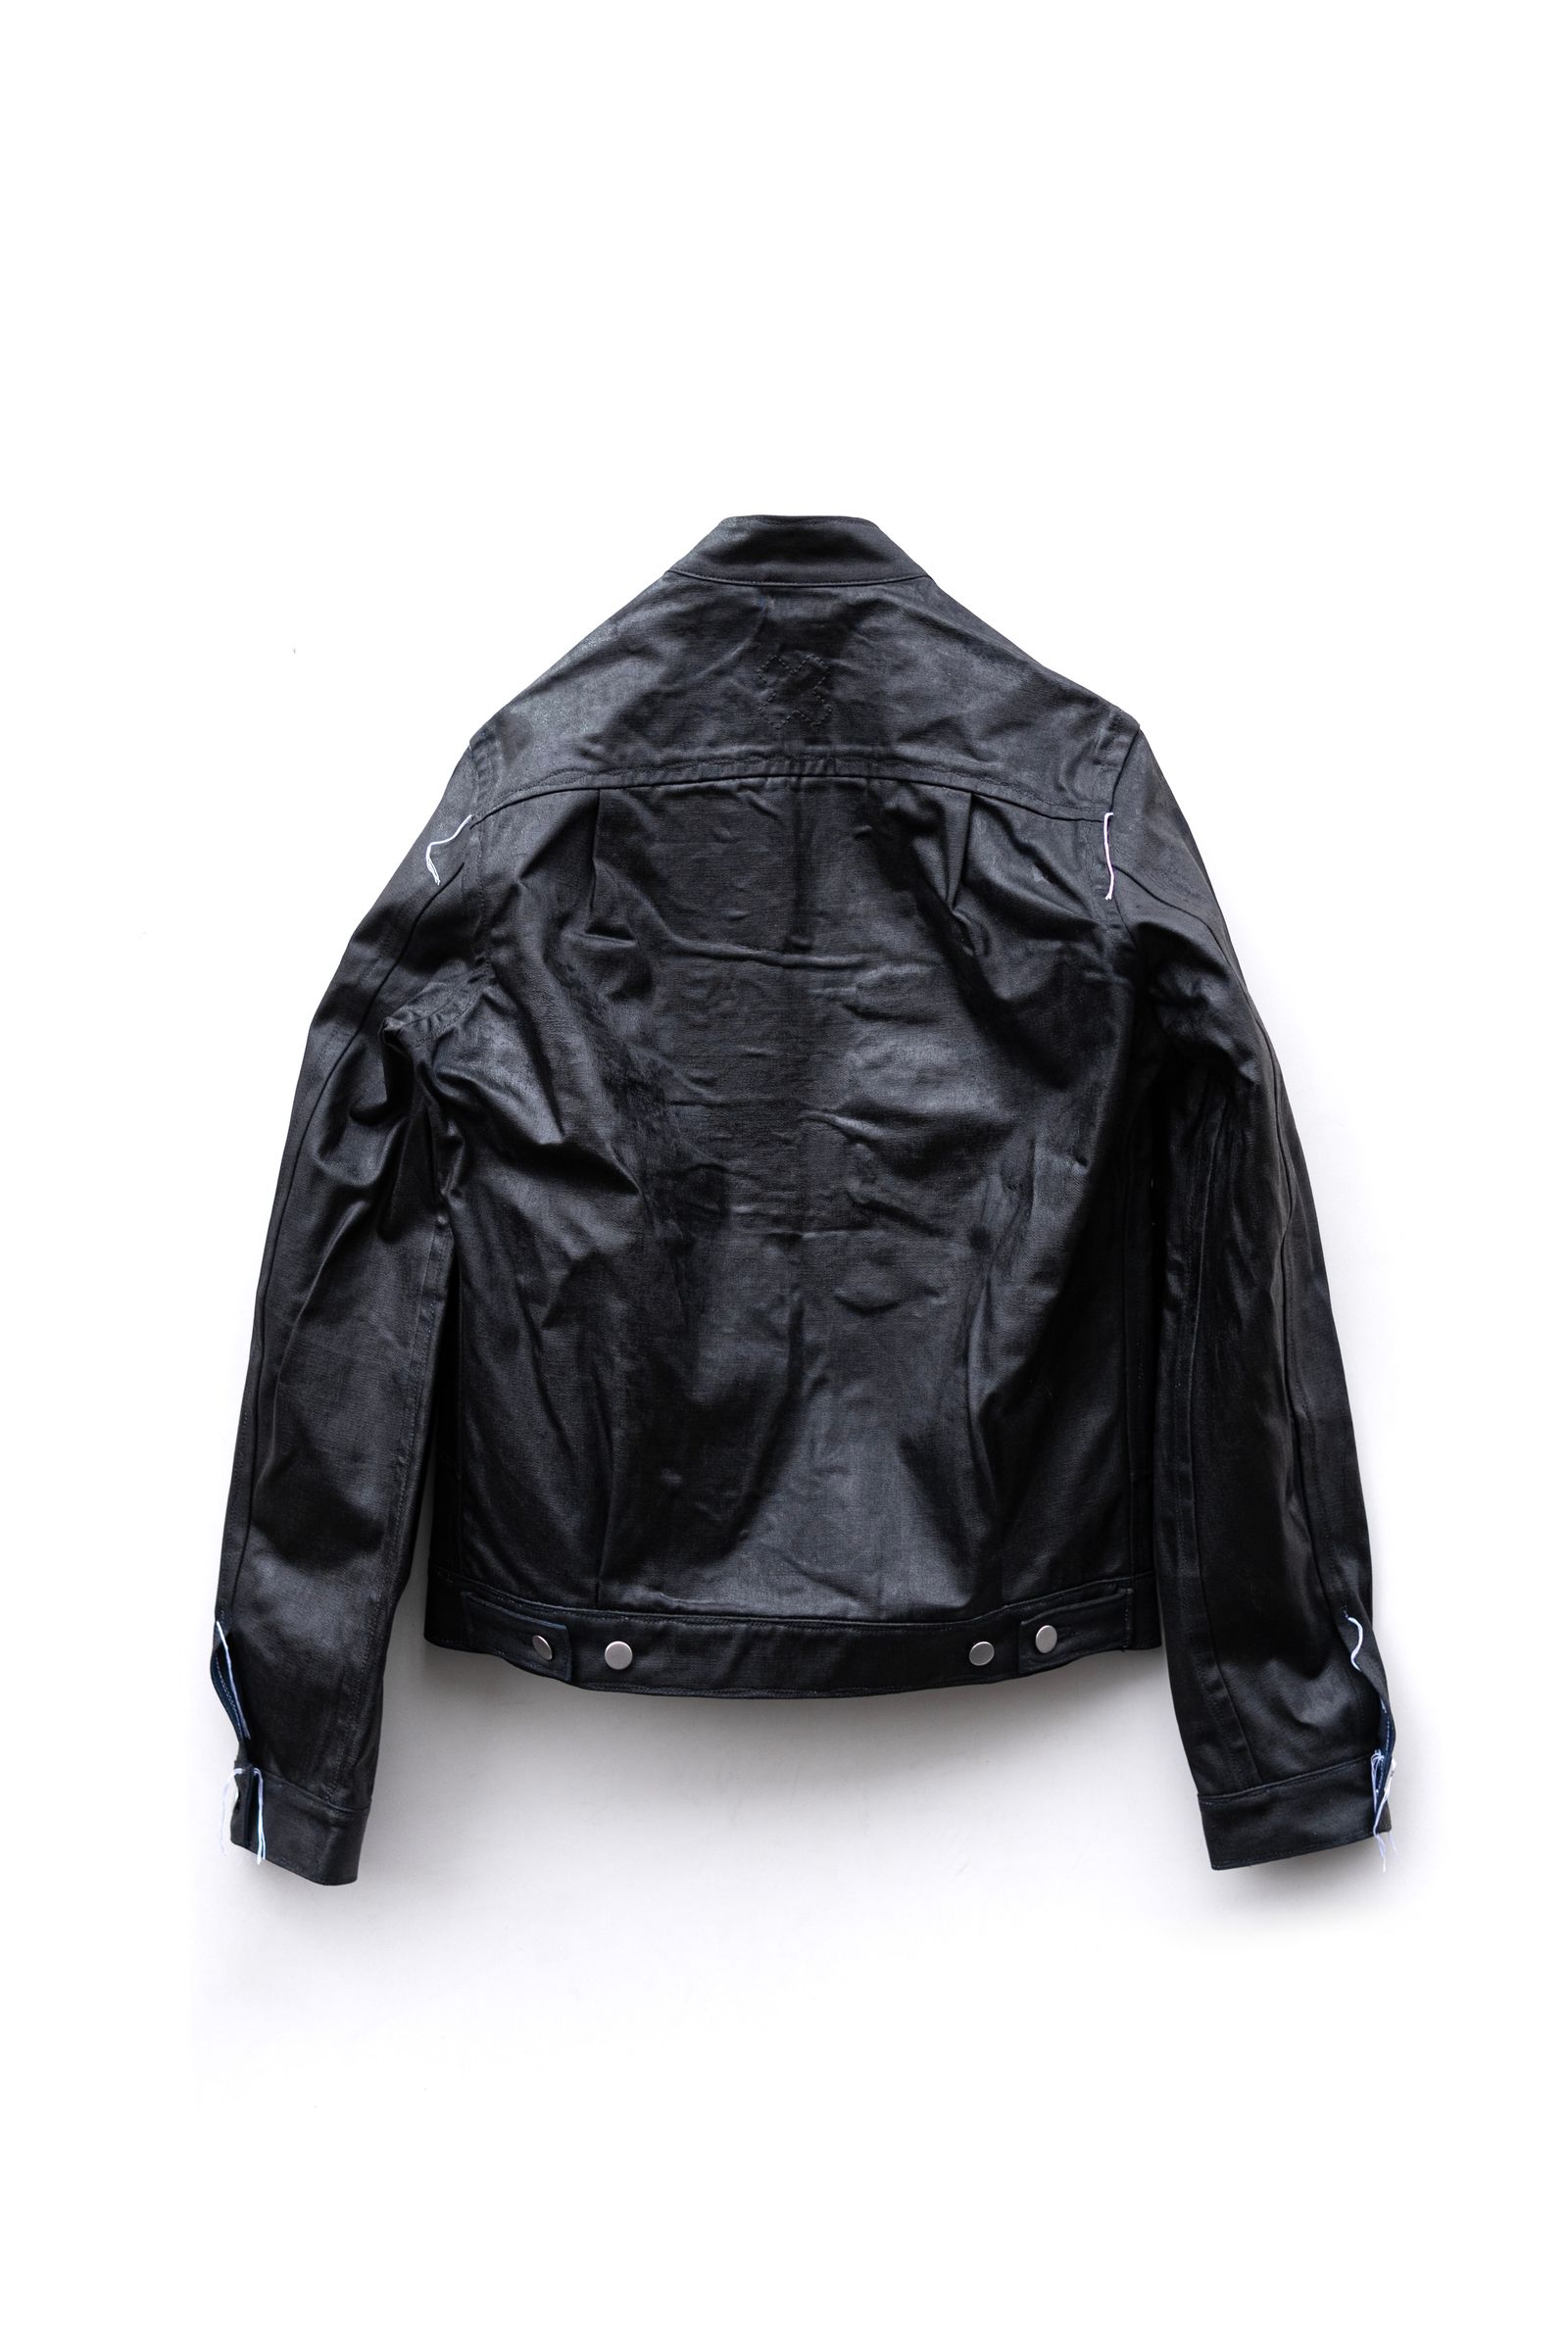 LQUARTET - Japanese Neck 2nd Jacket / Black | Retikle Online Store